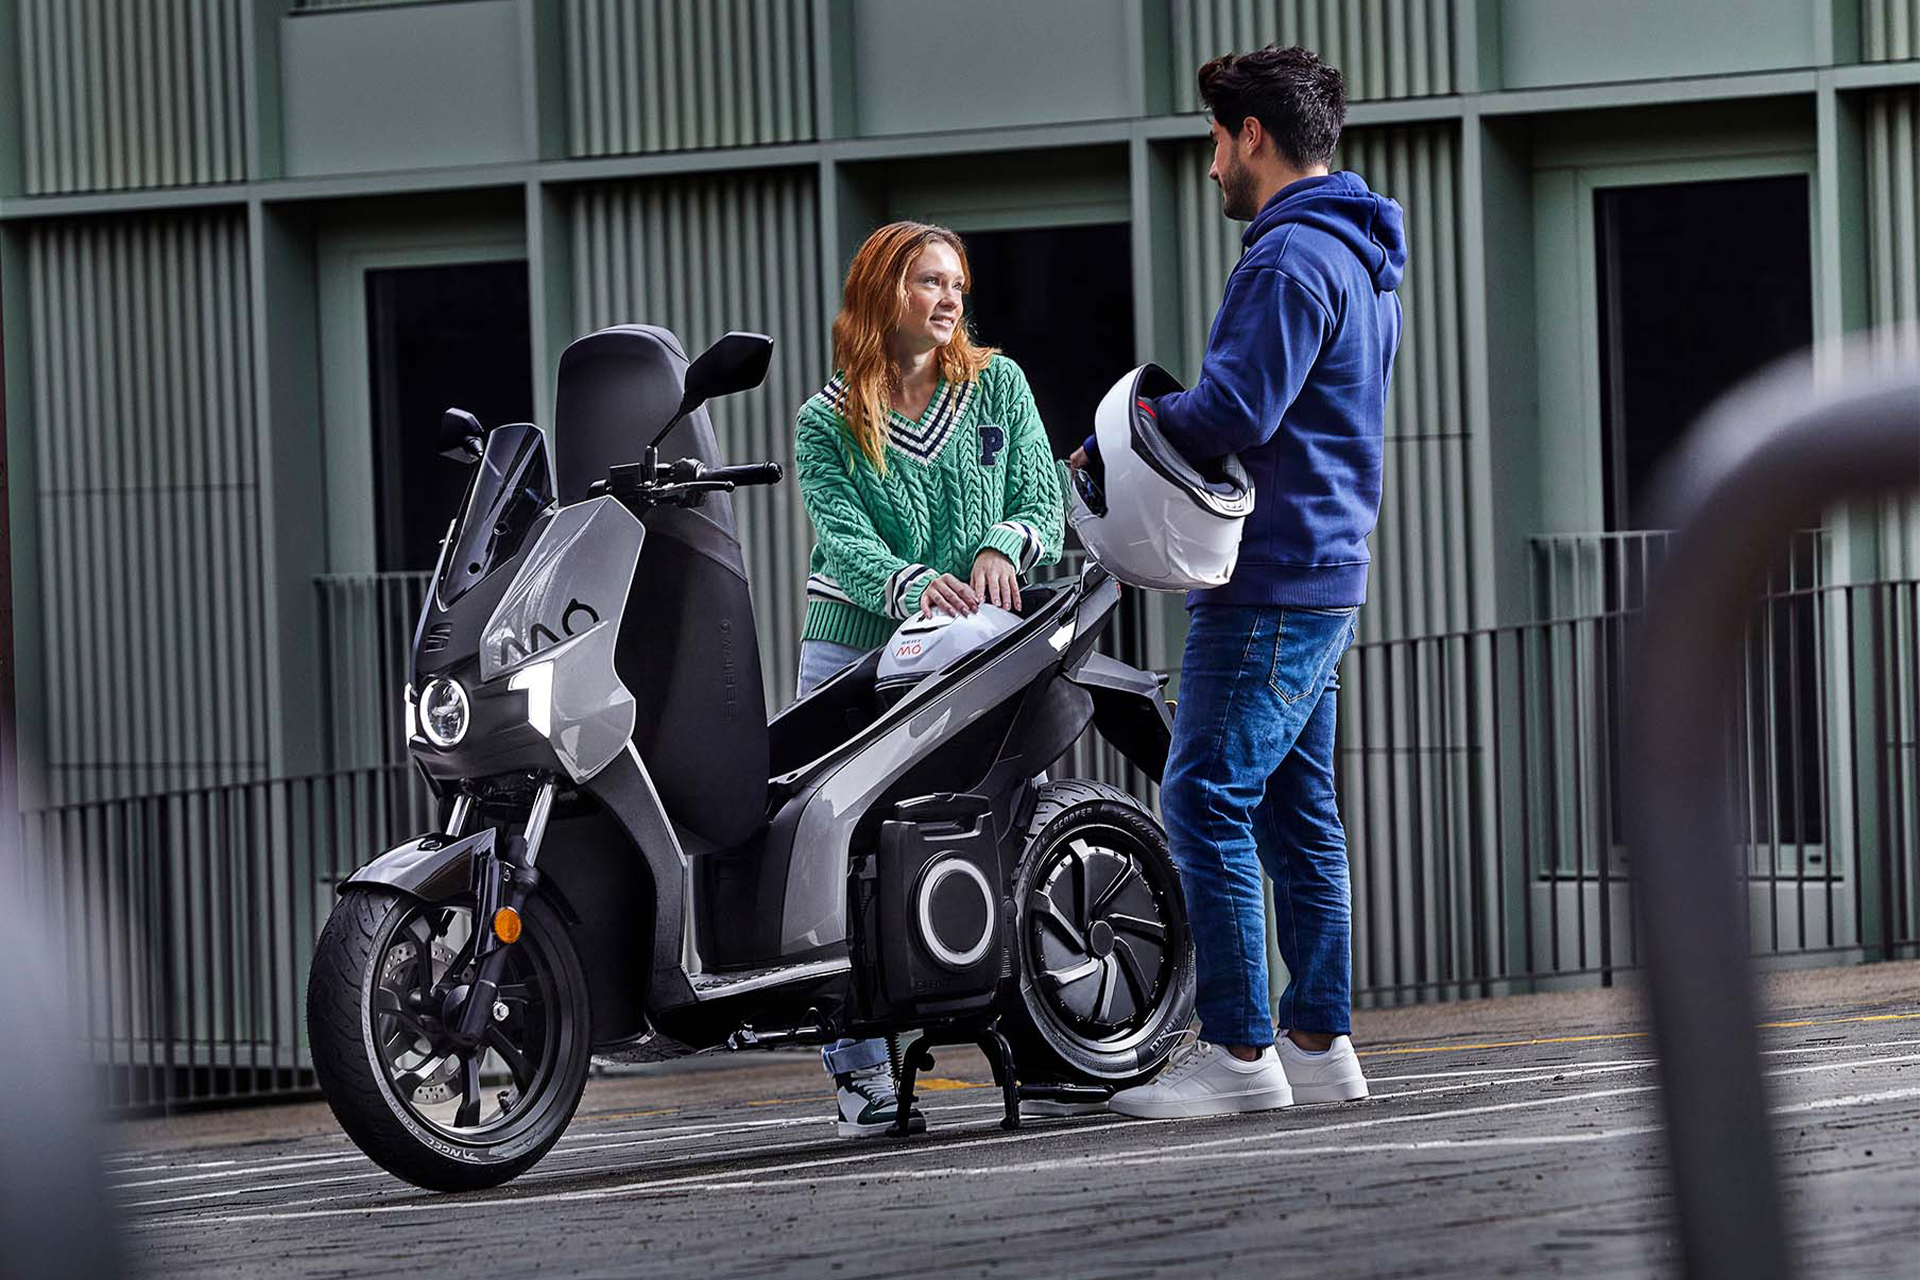 Scooter Elétrica que possui marcha à ré, SEAT MÓ 50 vem com bateria de 5,6 kWh de capacidade, possui autonomia impressionante e pode ser conduzida por pessoas de 14 anos